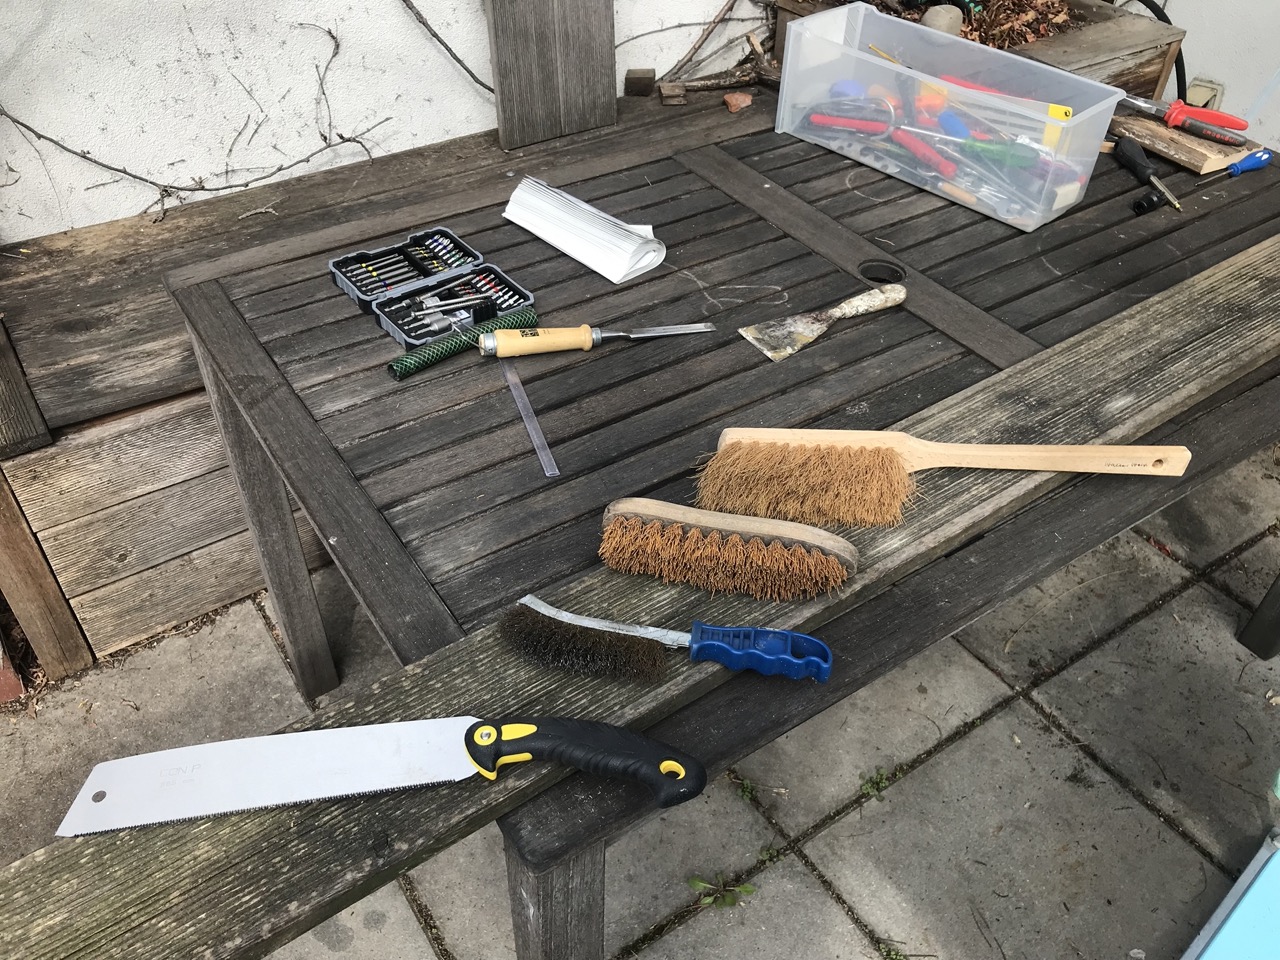 Auf einem verwitterterten Brett liegen eine Japansäge, eine Drahtbürste, eine Wurzelbürste und ein Handbesen. Im Hintergrund diverses anderes Werkzeug.